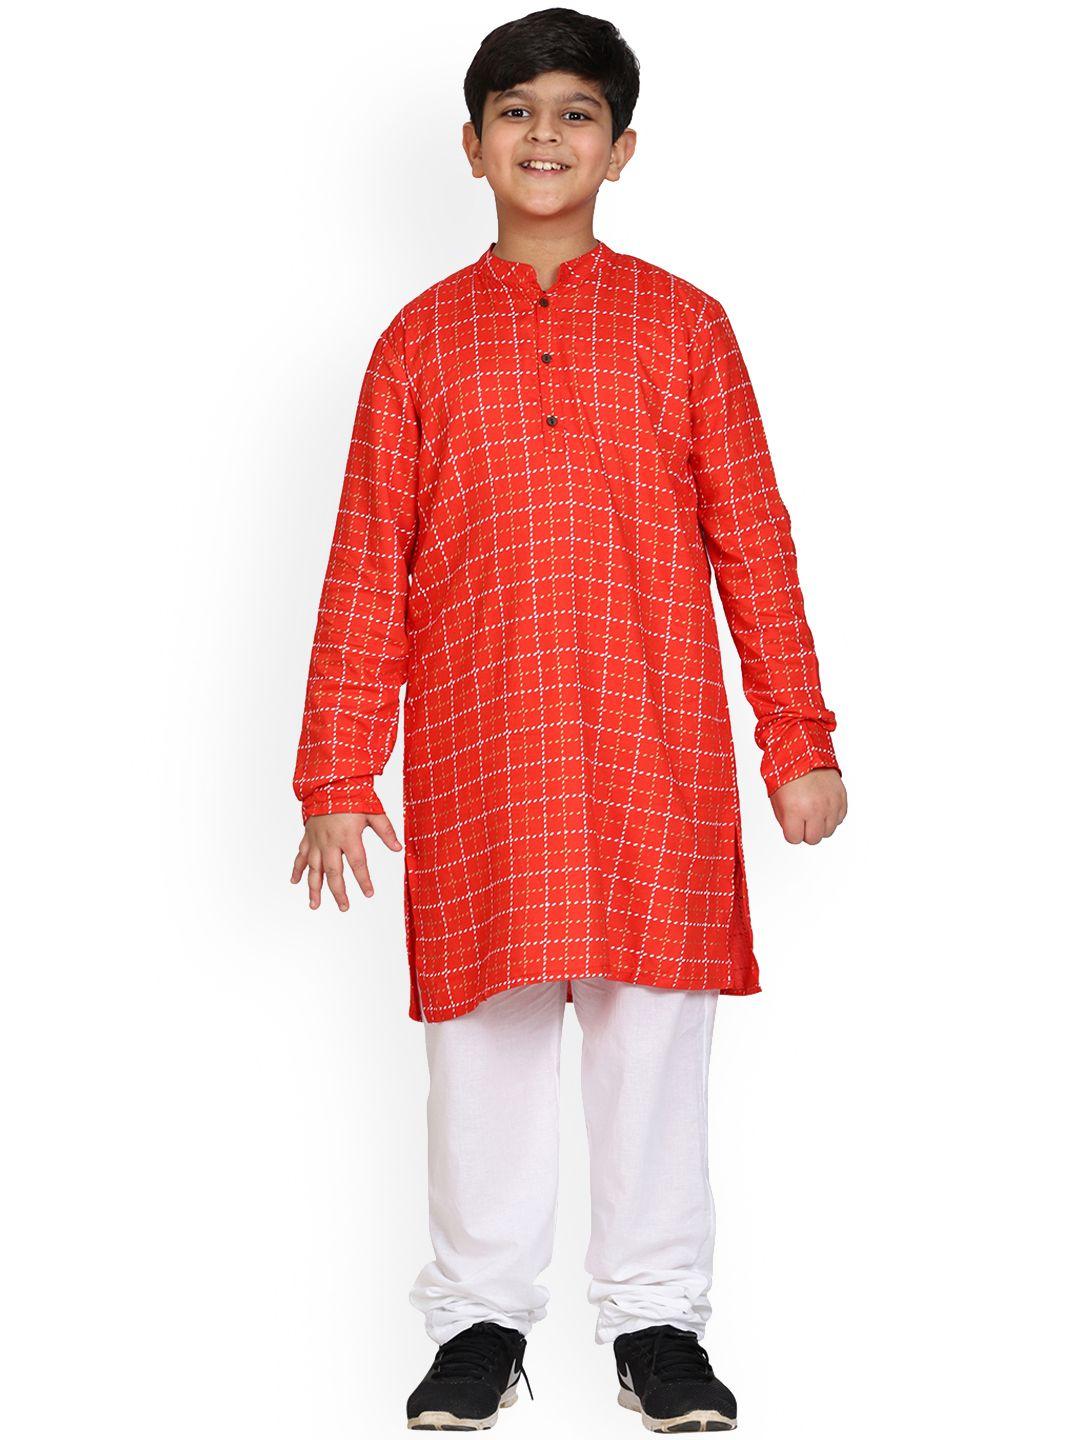 kiddopanti boys red printed kurta with pyjamas